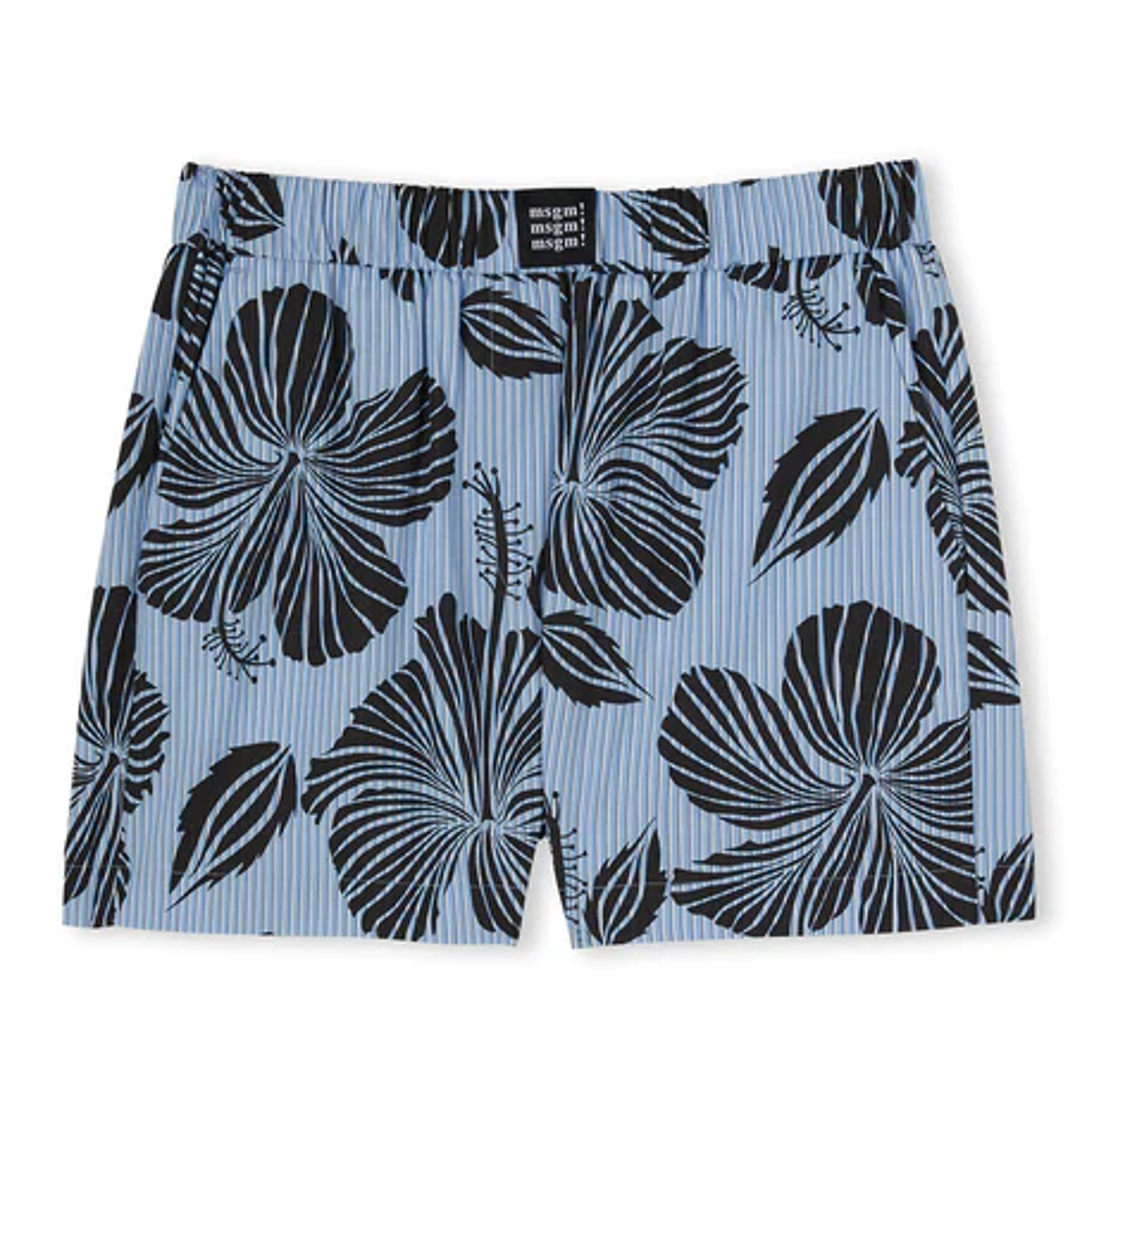 shop MSGM Saldi Pantaloni: Pantaloni MSGM, shorts, elastico in vita, tasche laterali.

Composizione: 100% cotone. number 2548